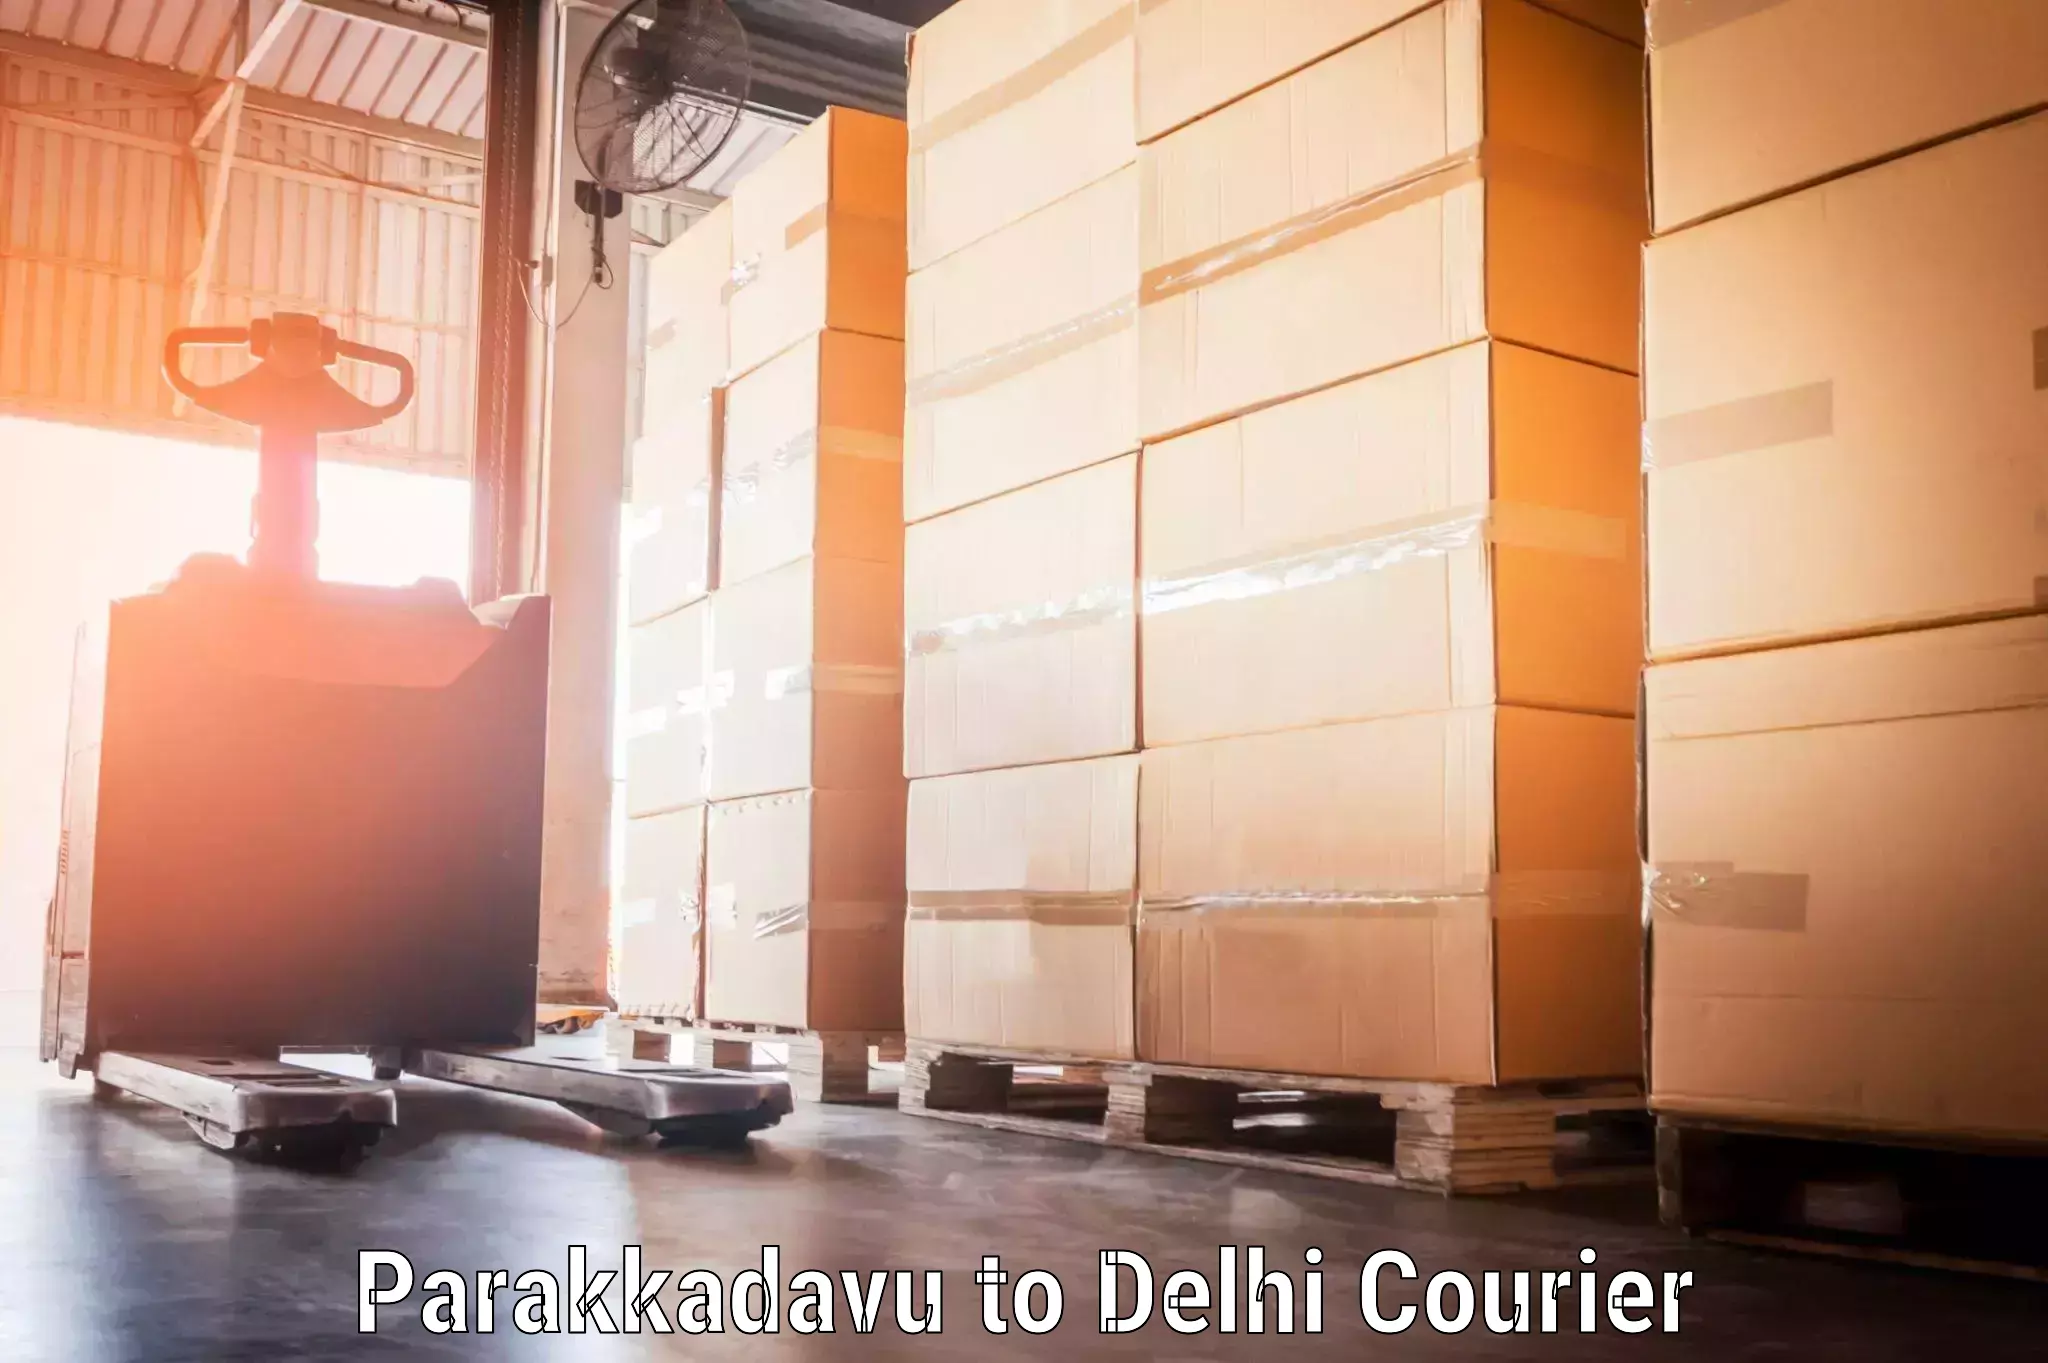 Baggage delivery scheduling Parakkadavu to Delhi